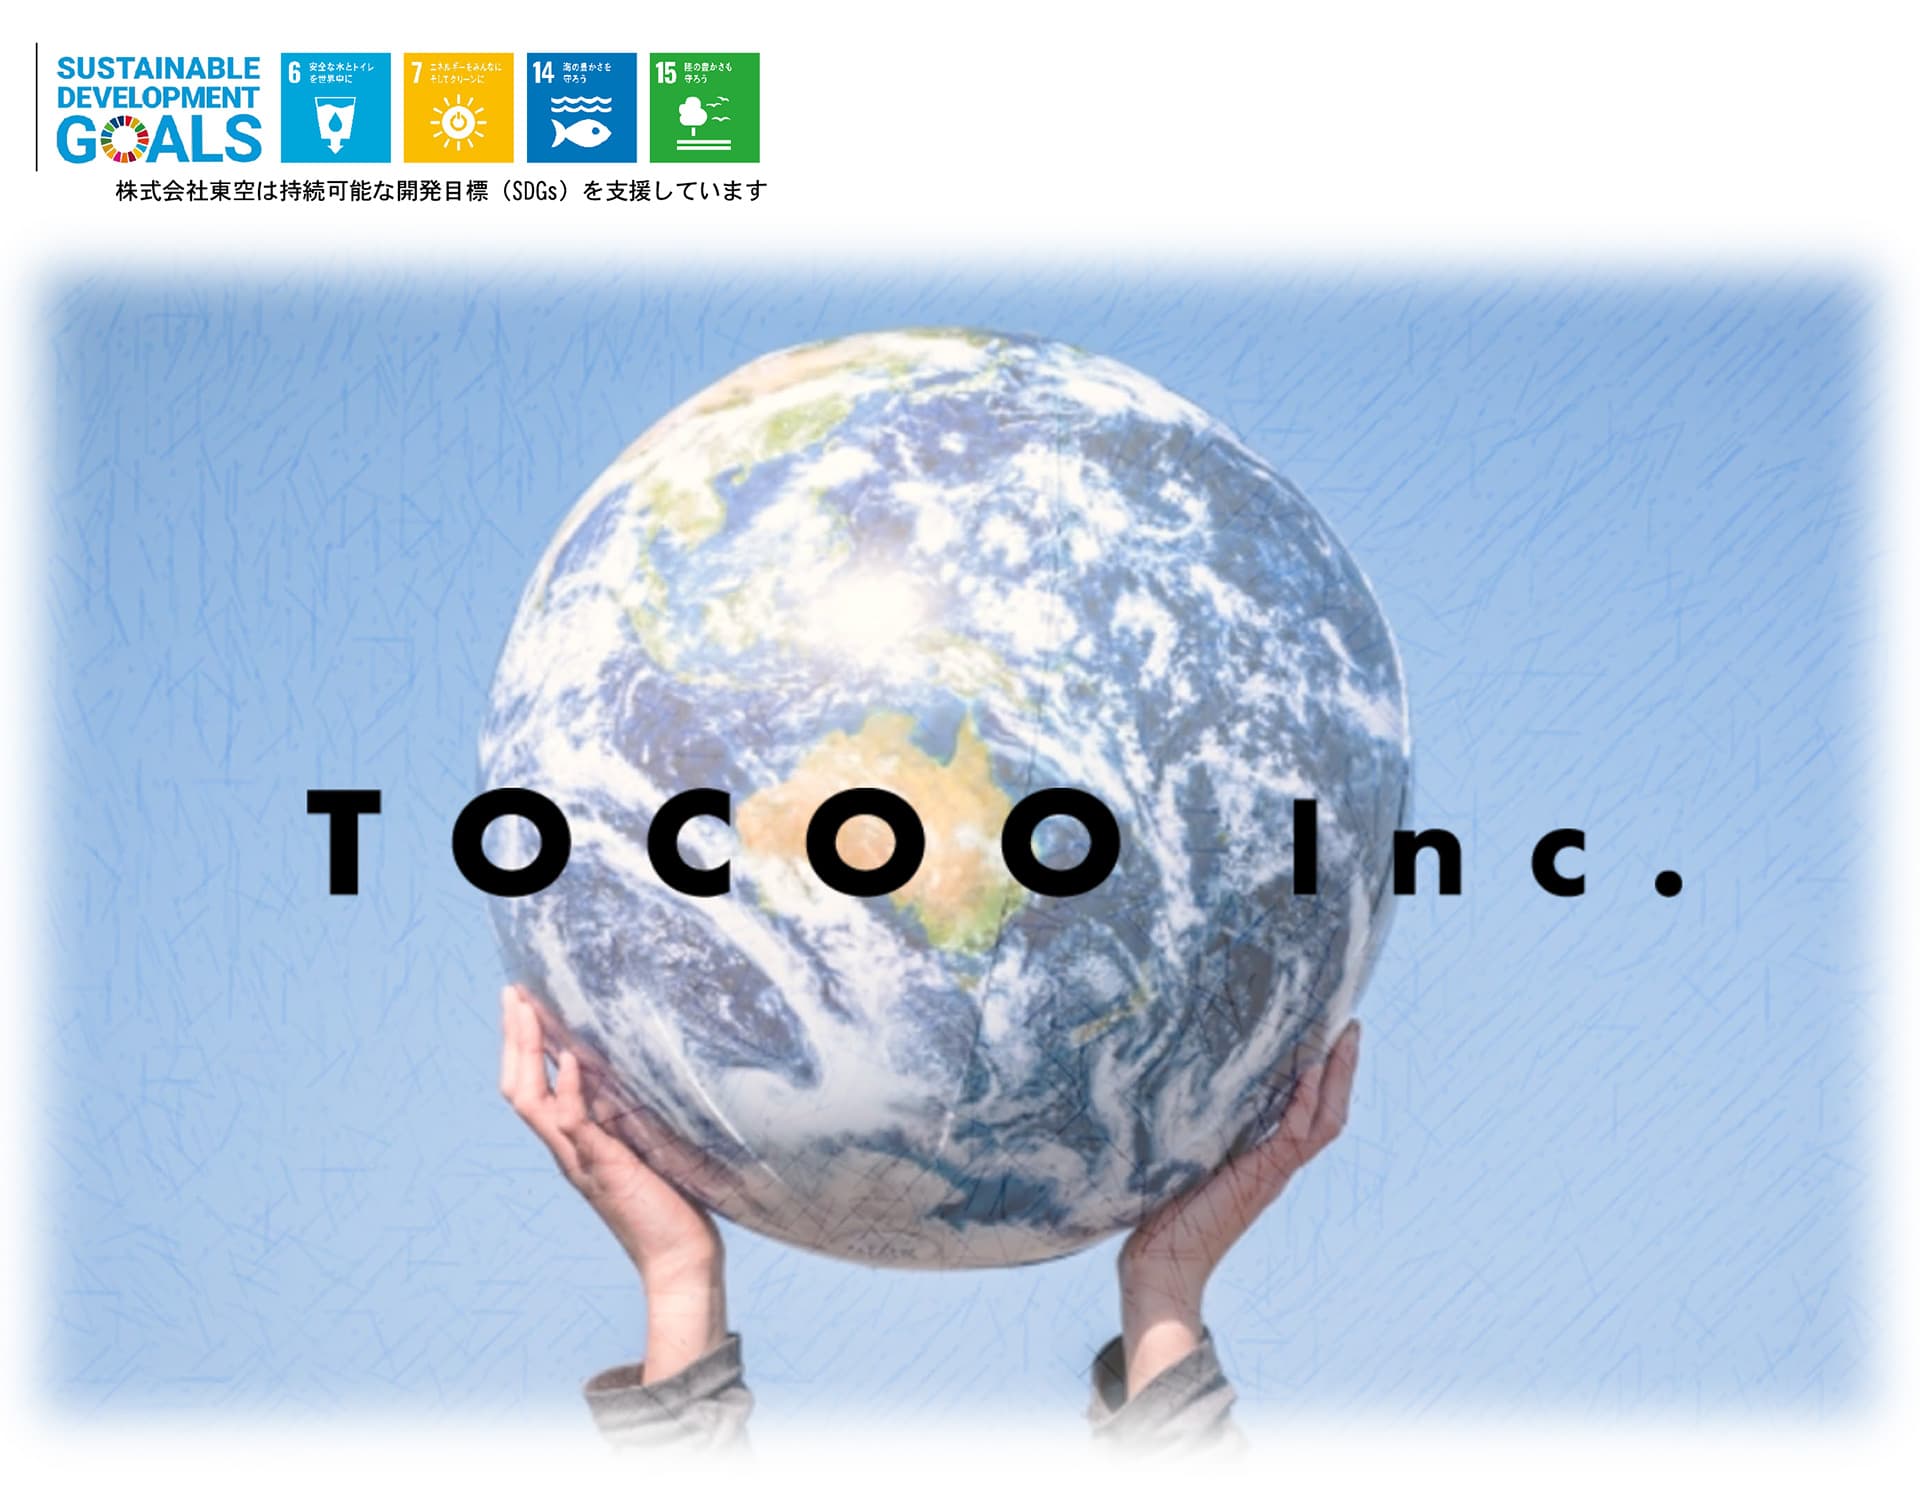 株式会社東空は持続可能な開発目標(SDGs)を支援しています。